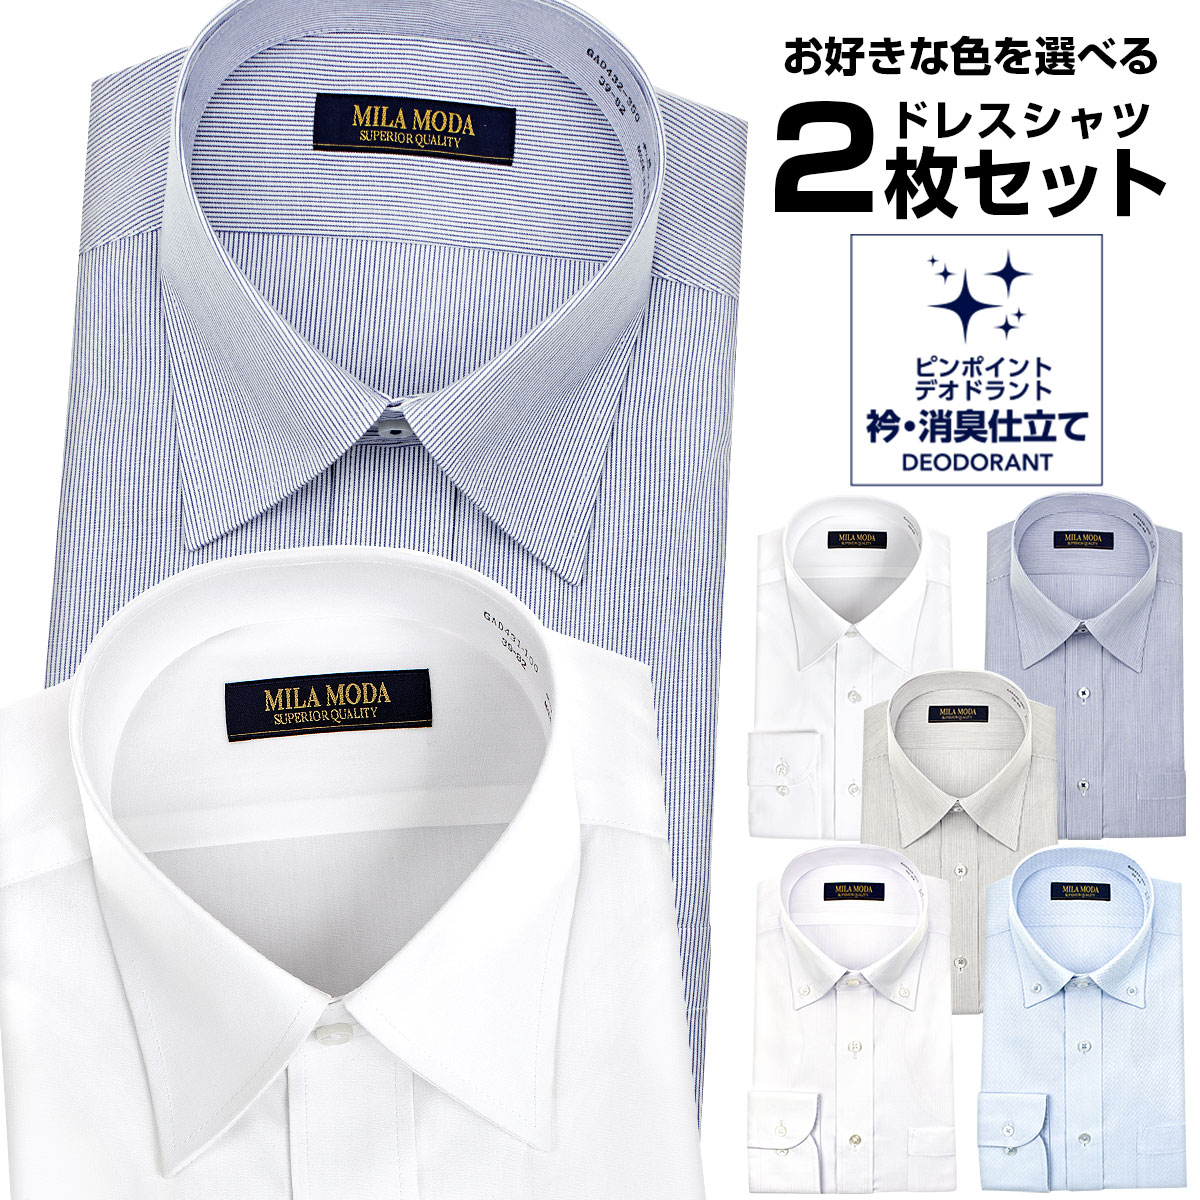 コスパ ビジネスシーンに嬉しいベーシックなワイシャツ2枚セット メンズワイシャツ 2枚セット 人気ブランドの新作 豊富なギフト 送料無料 標準体 消臭機能付き MILA review 2201ft MODA